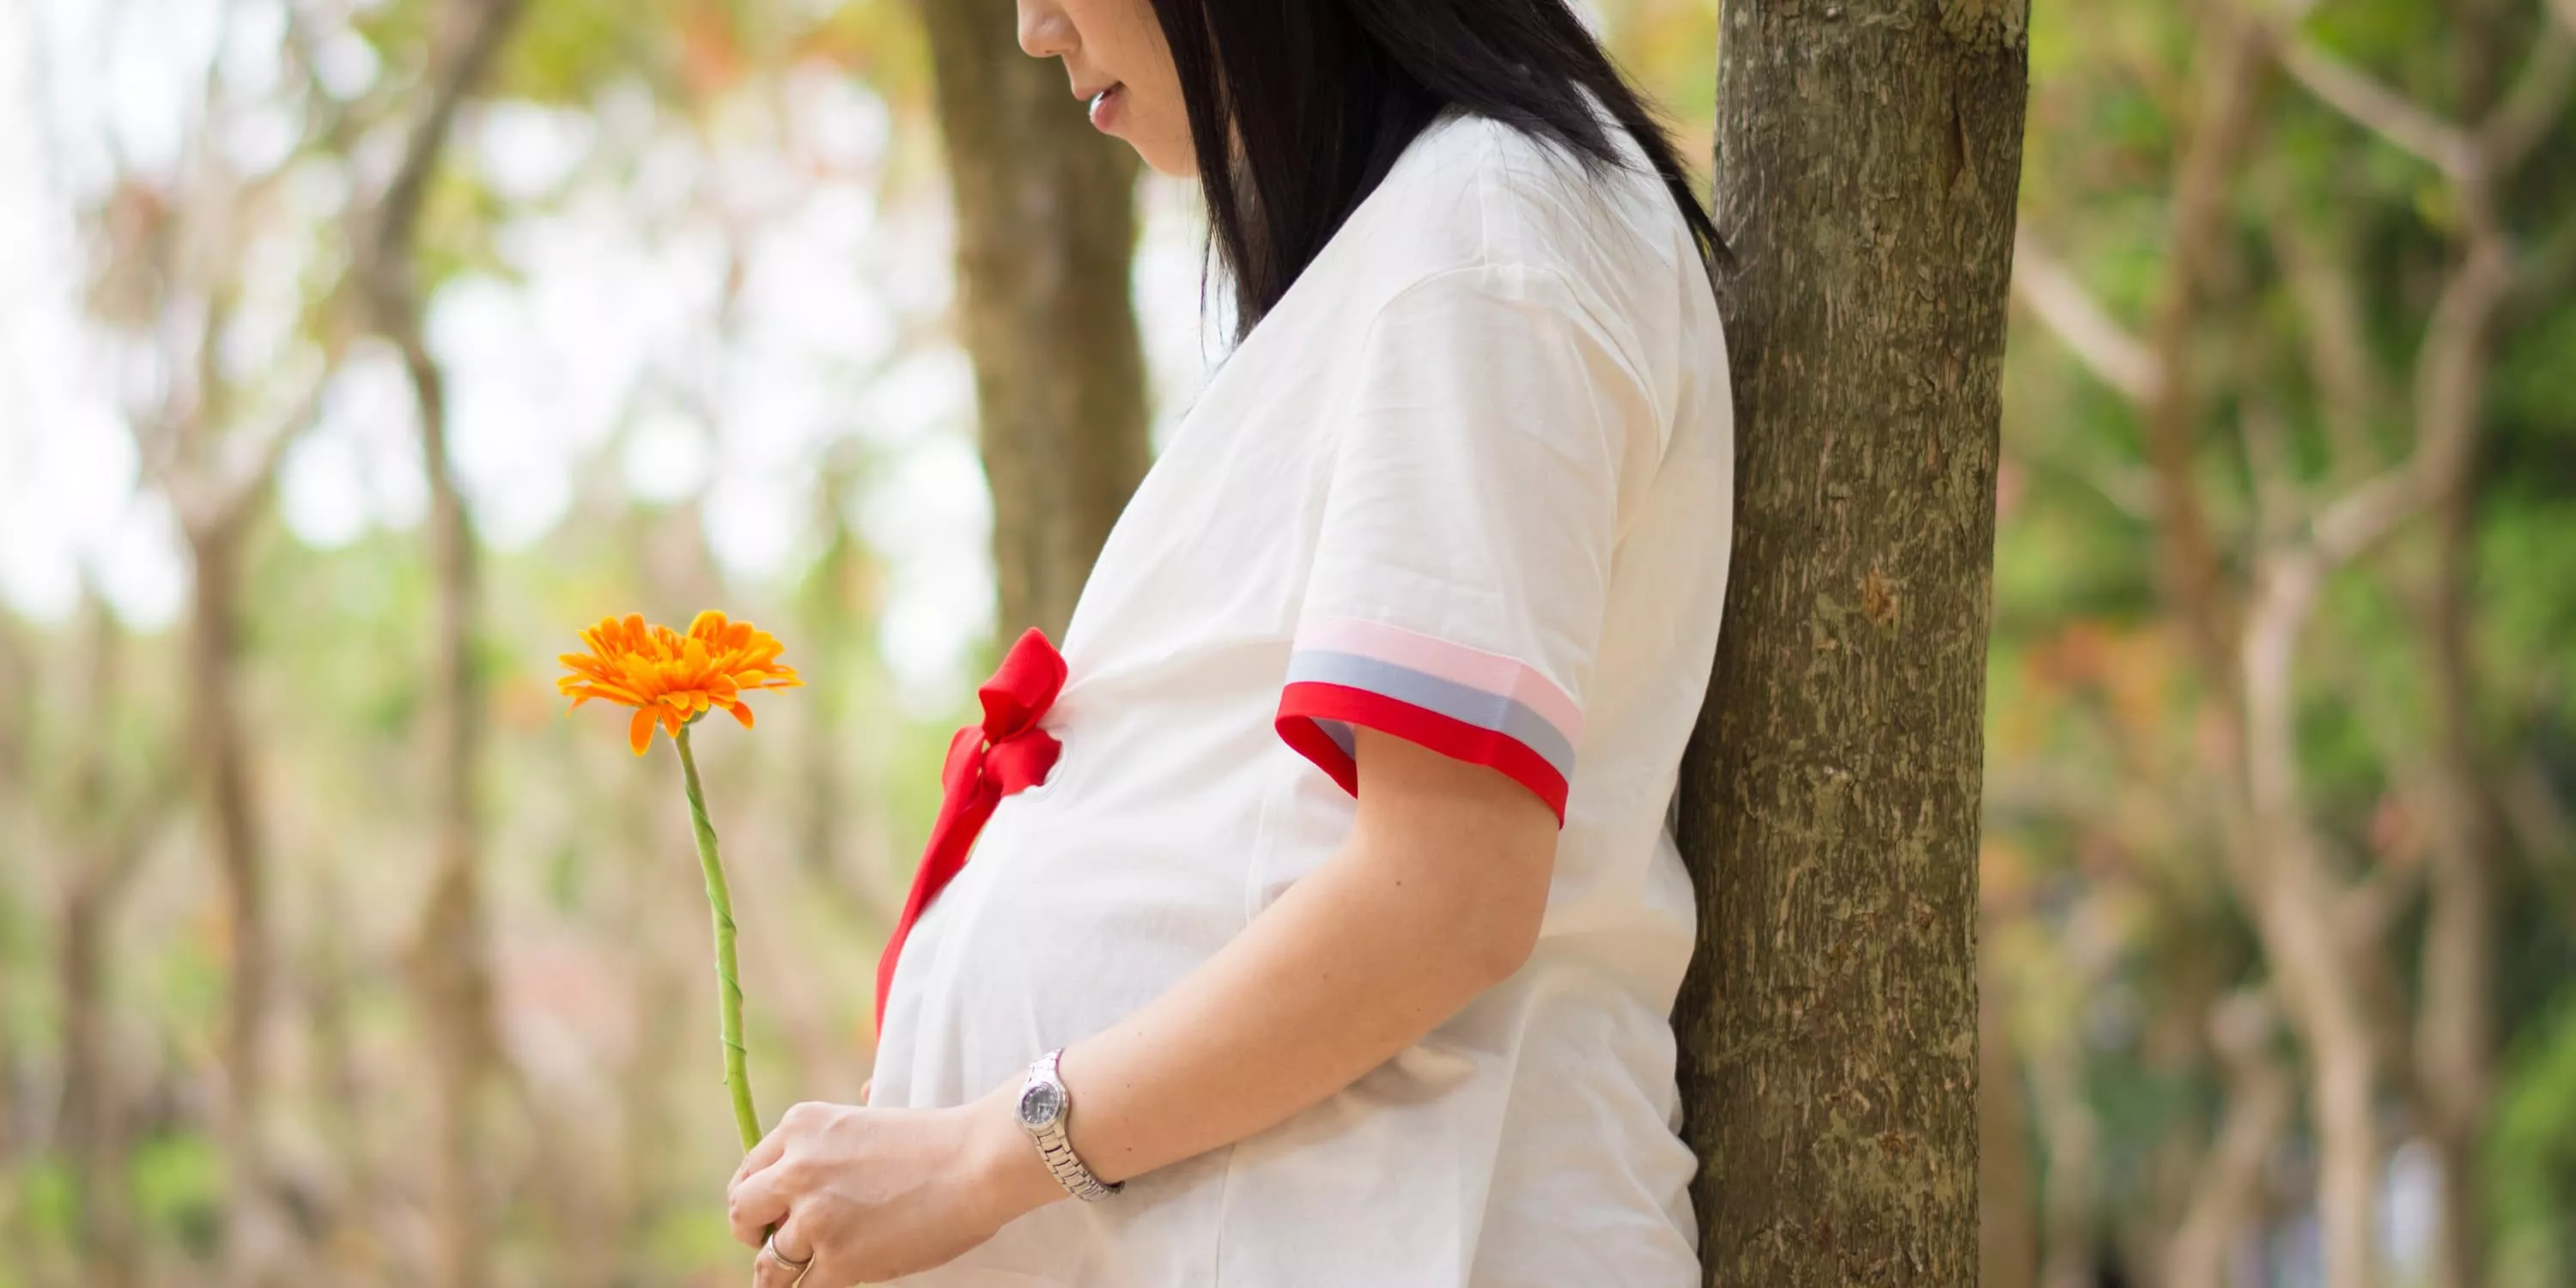 Vista lateral: mulher grávida embaixo de uma árvore segurando uma flor nas mãos